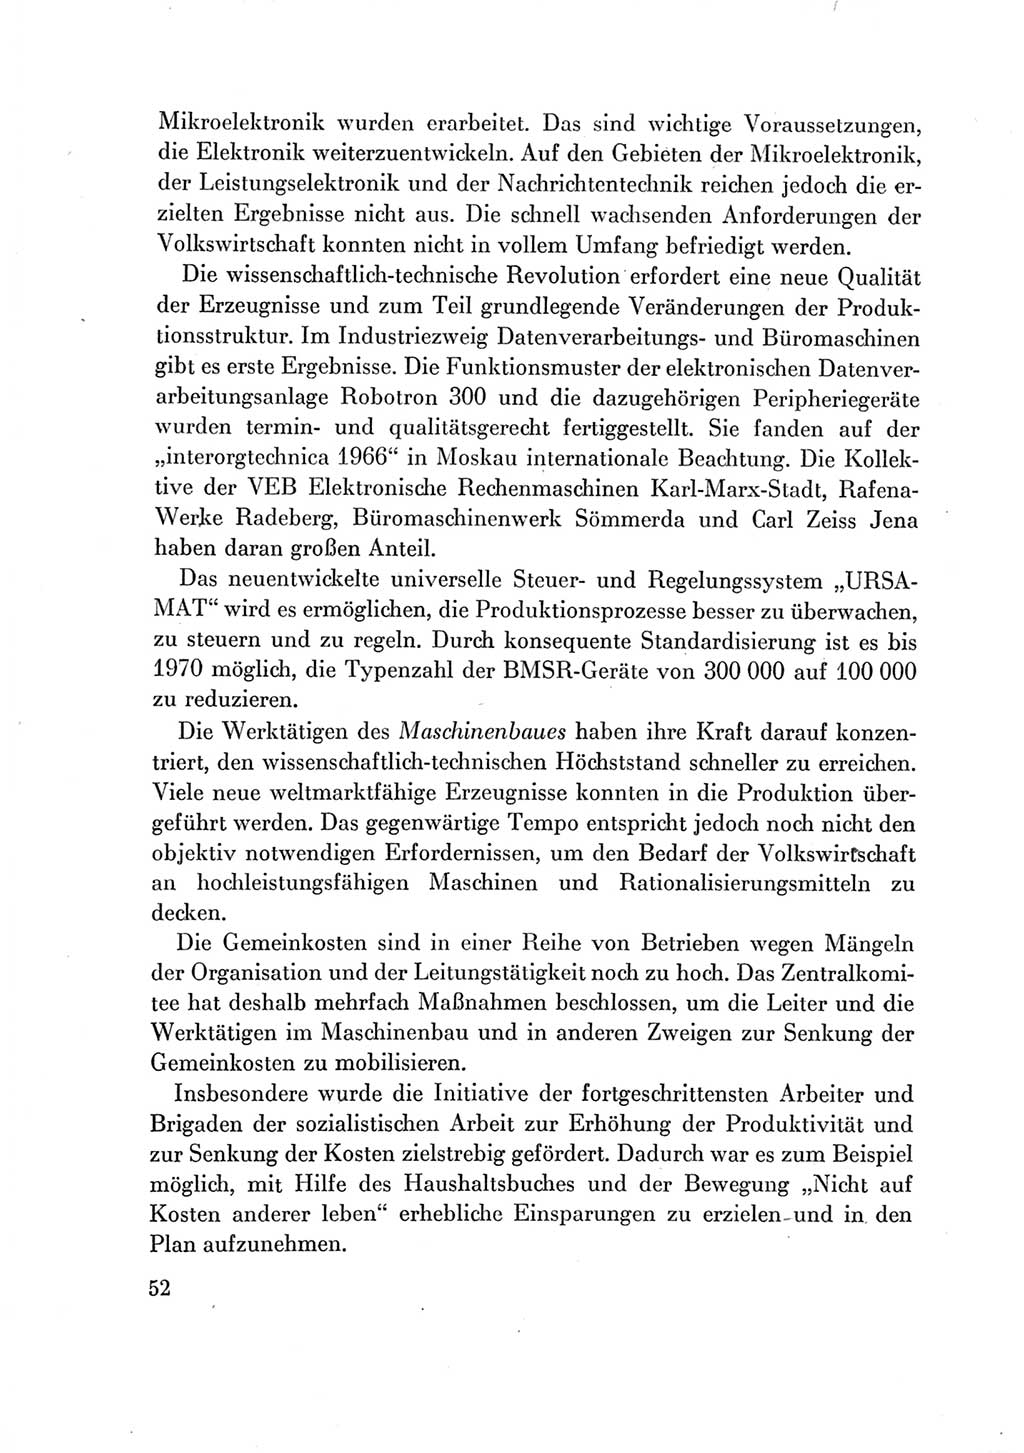 Protokoll der Verhandlungen des Ⅶ. Parteitages der Sozialistischen Einheitspartei Deutschlands (SED) [Deutsche Demokratische Republik (DDR)] 1967, Band Ⅳ, Seite 52 (Prot. Verh. Ⅶ. PT SED DDR 1967, Bd. Ⅳ, S. 52)